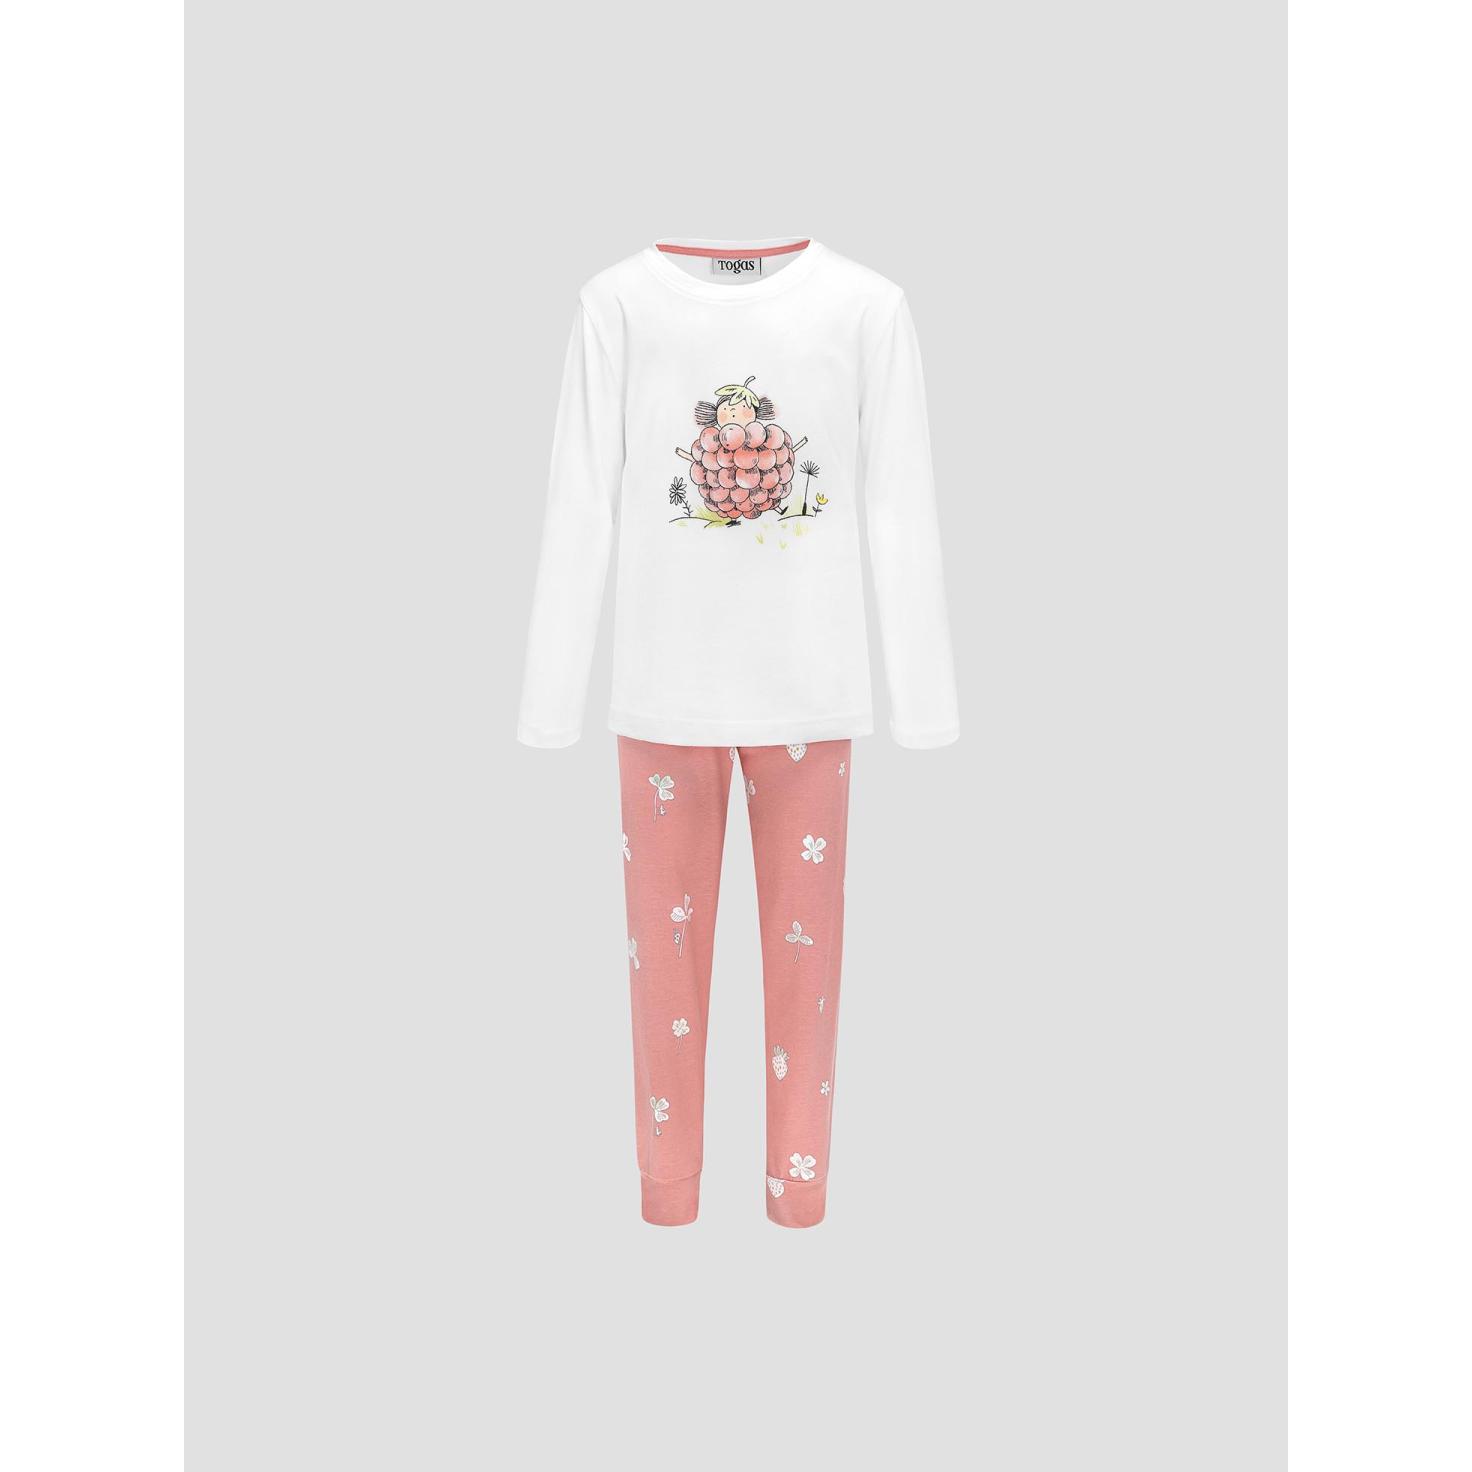 Пижама для девочек Kids by togas Стробби бело-розовый 92-98 см жен пижама с шортами инь янь белый р 48